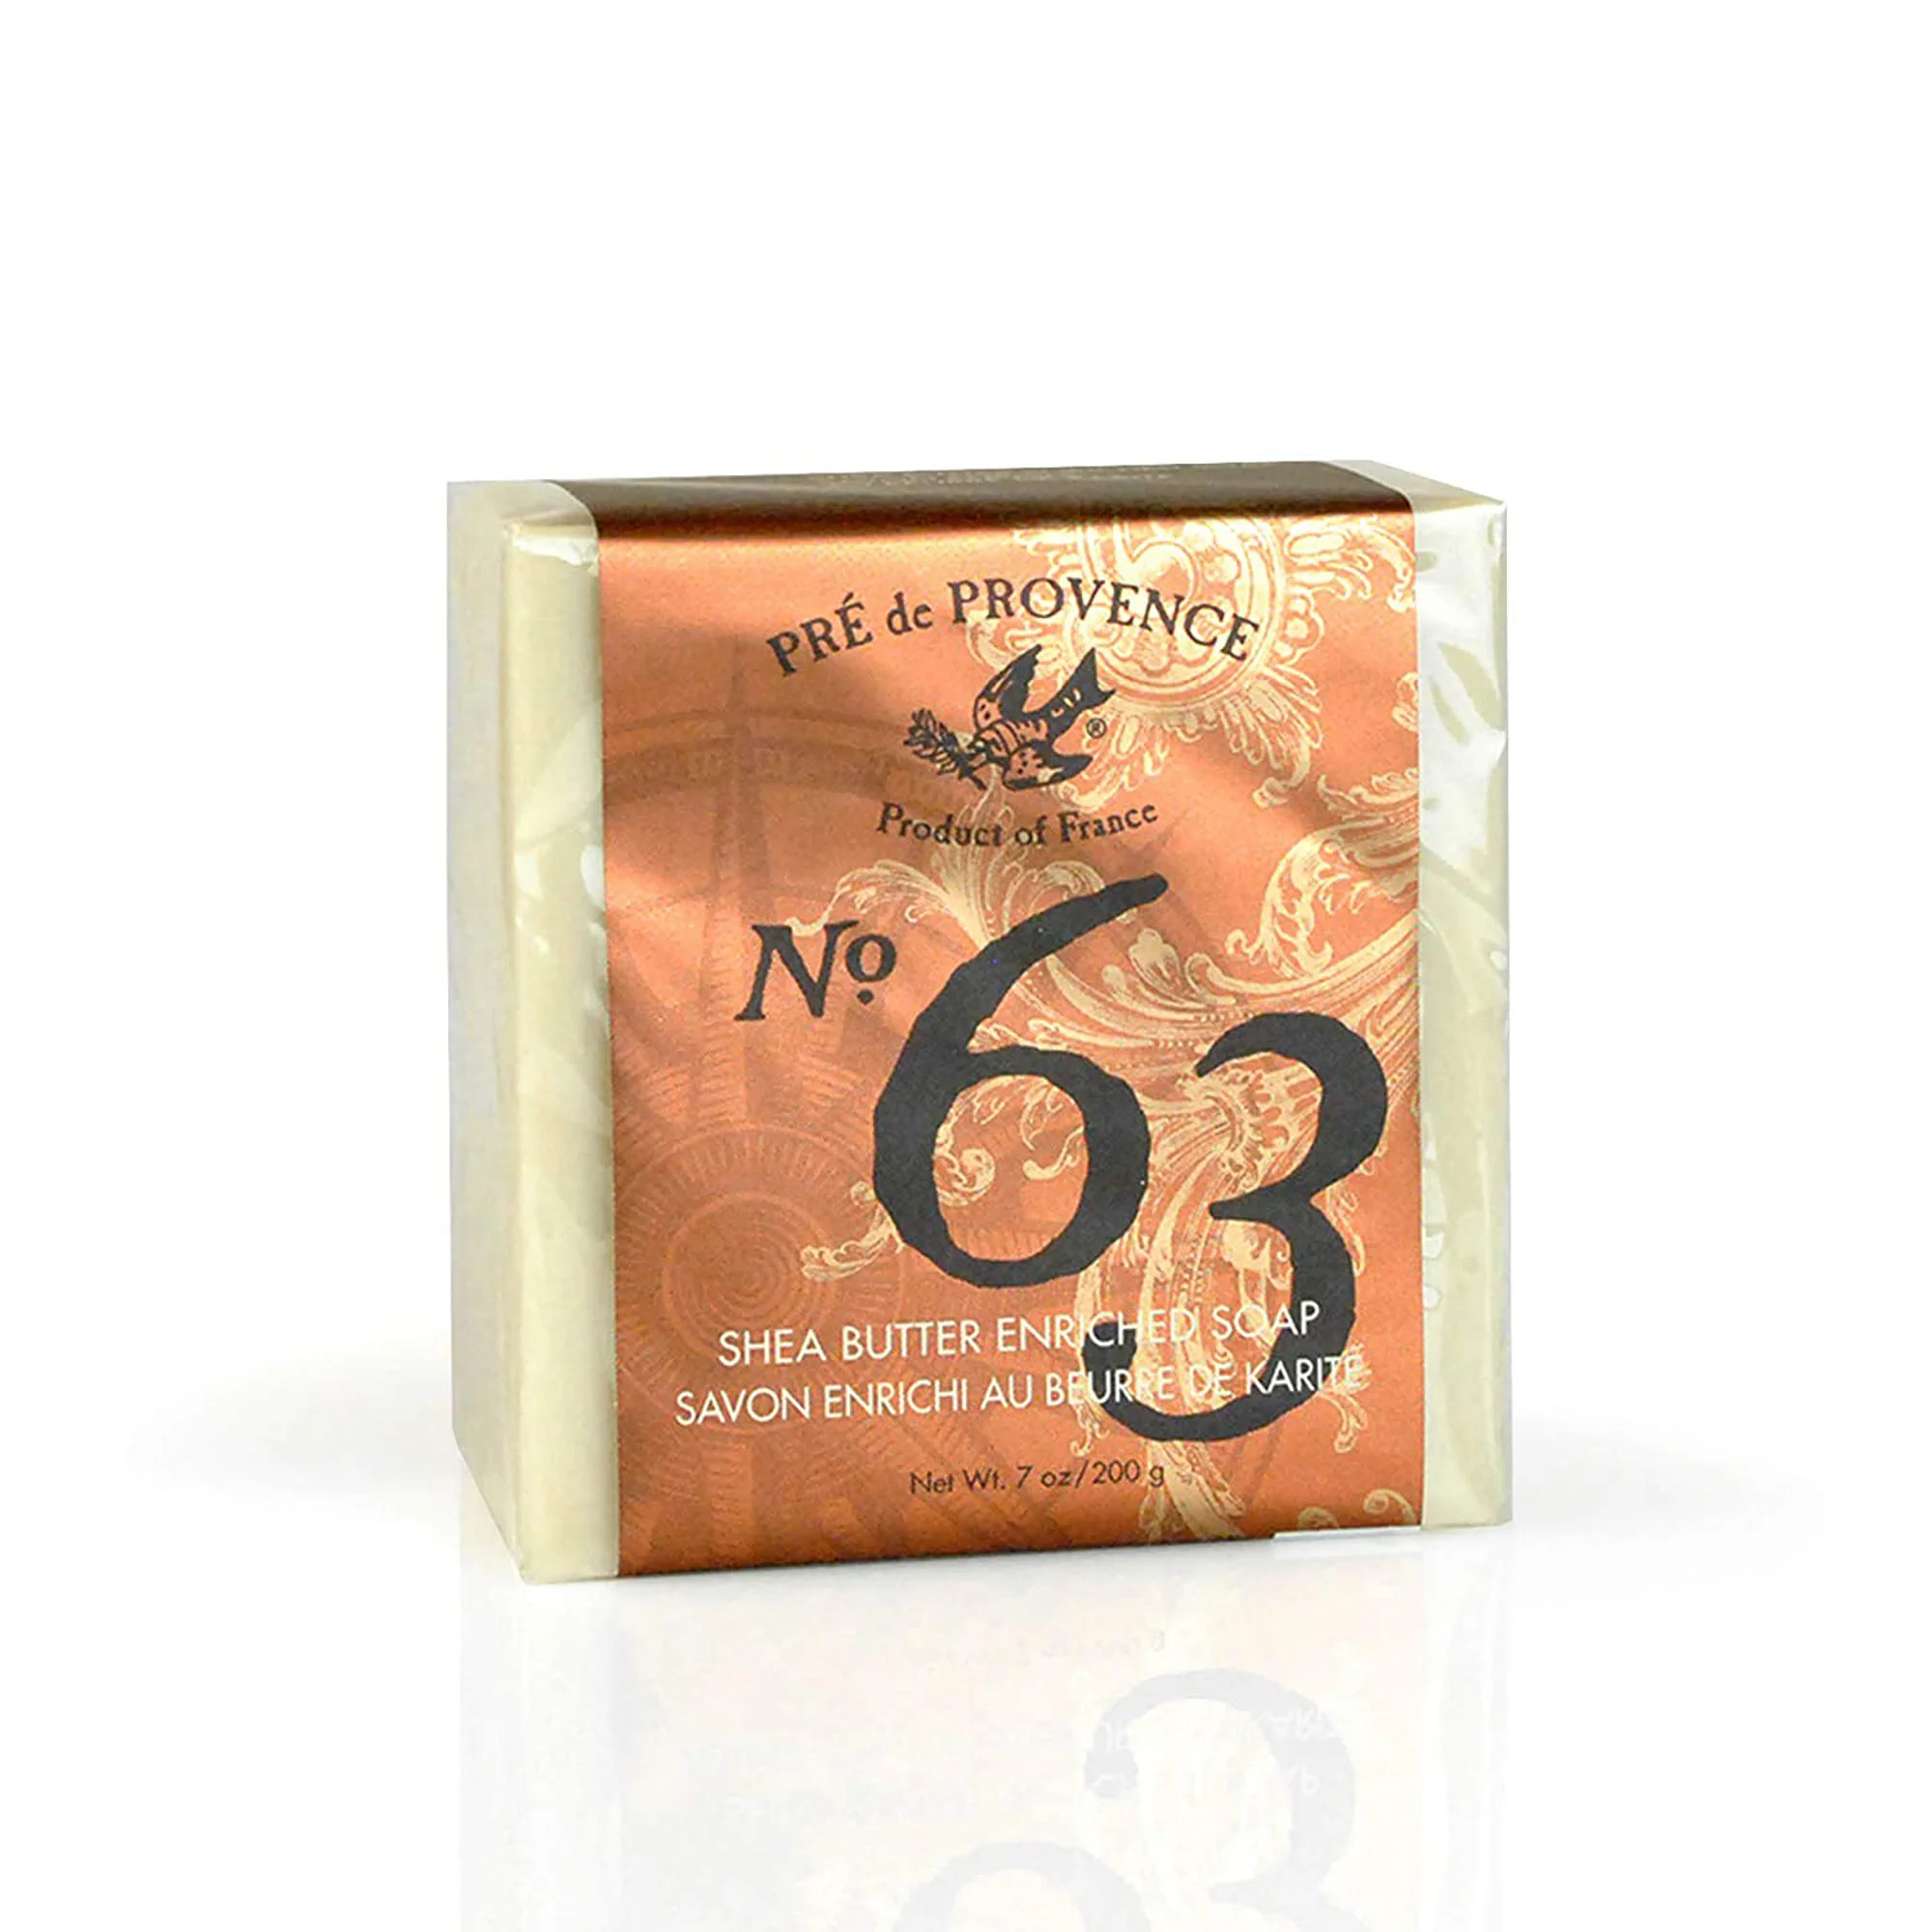 N0. 63 Mens Cube Soap-Pre de PROVENCE